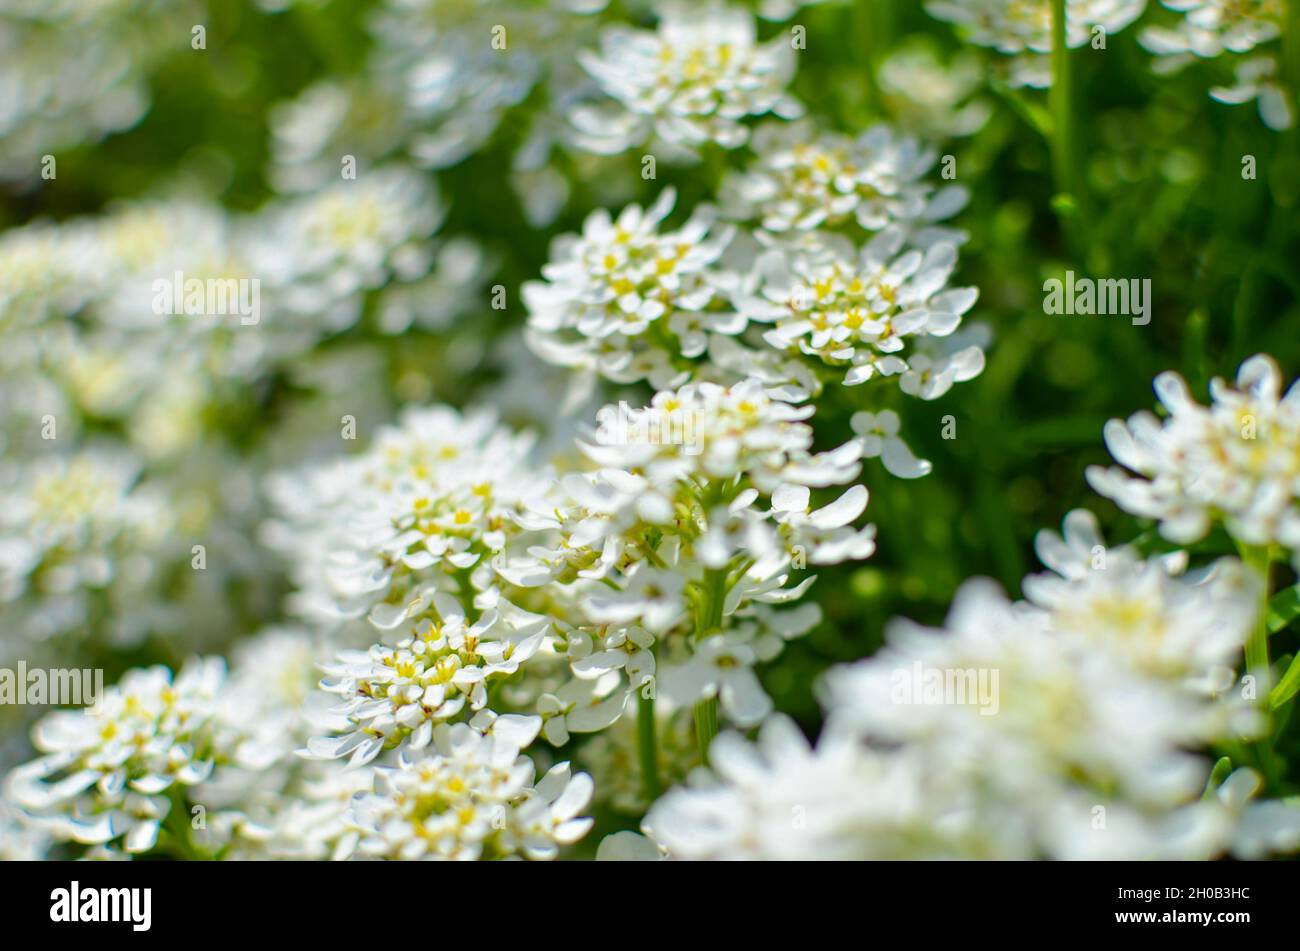 Iberis saxatilis, amara or bitter candytuft many white flowers Stock Photo